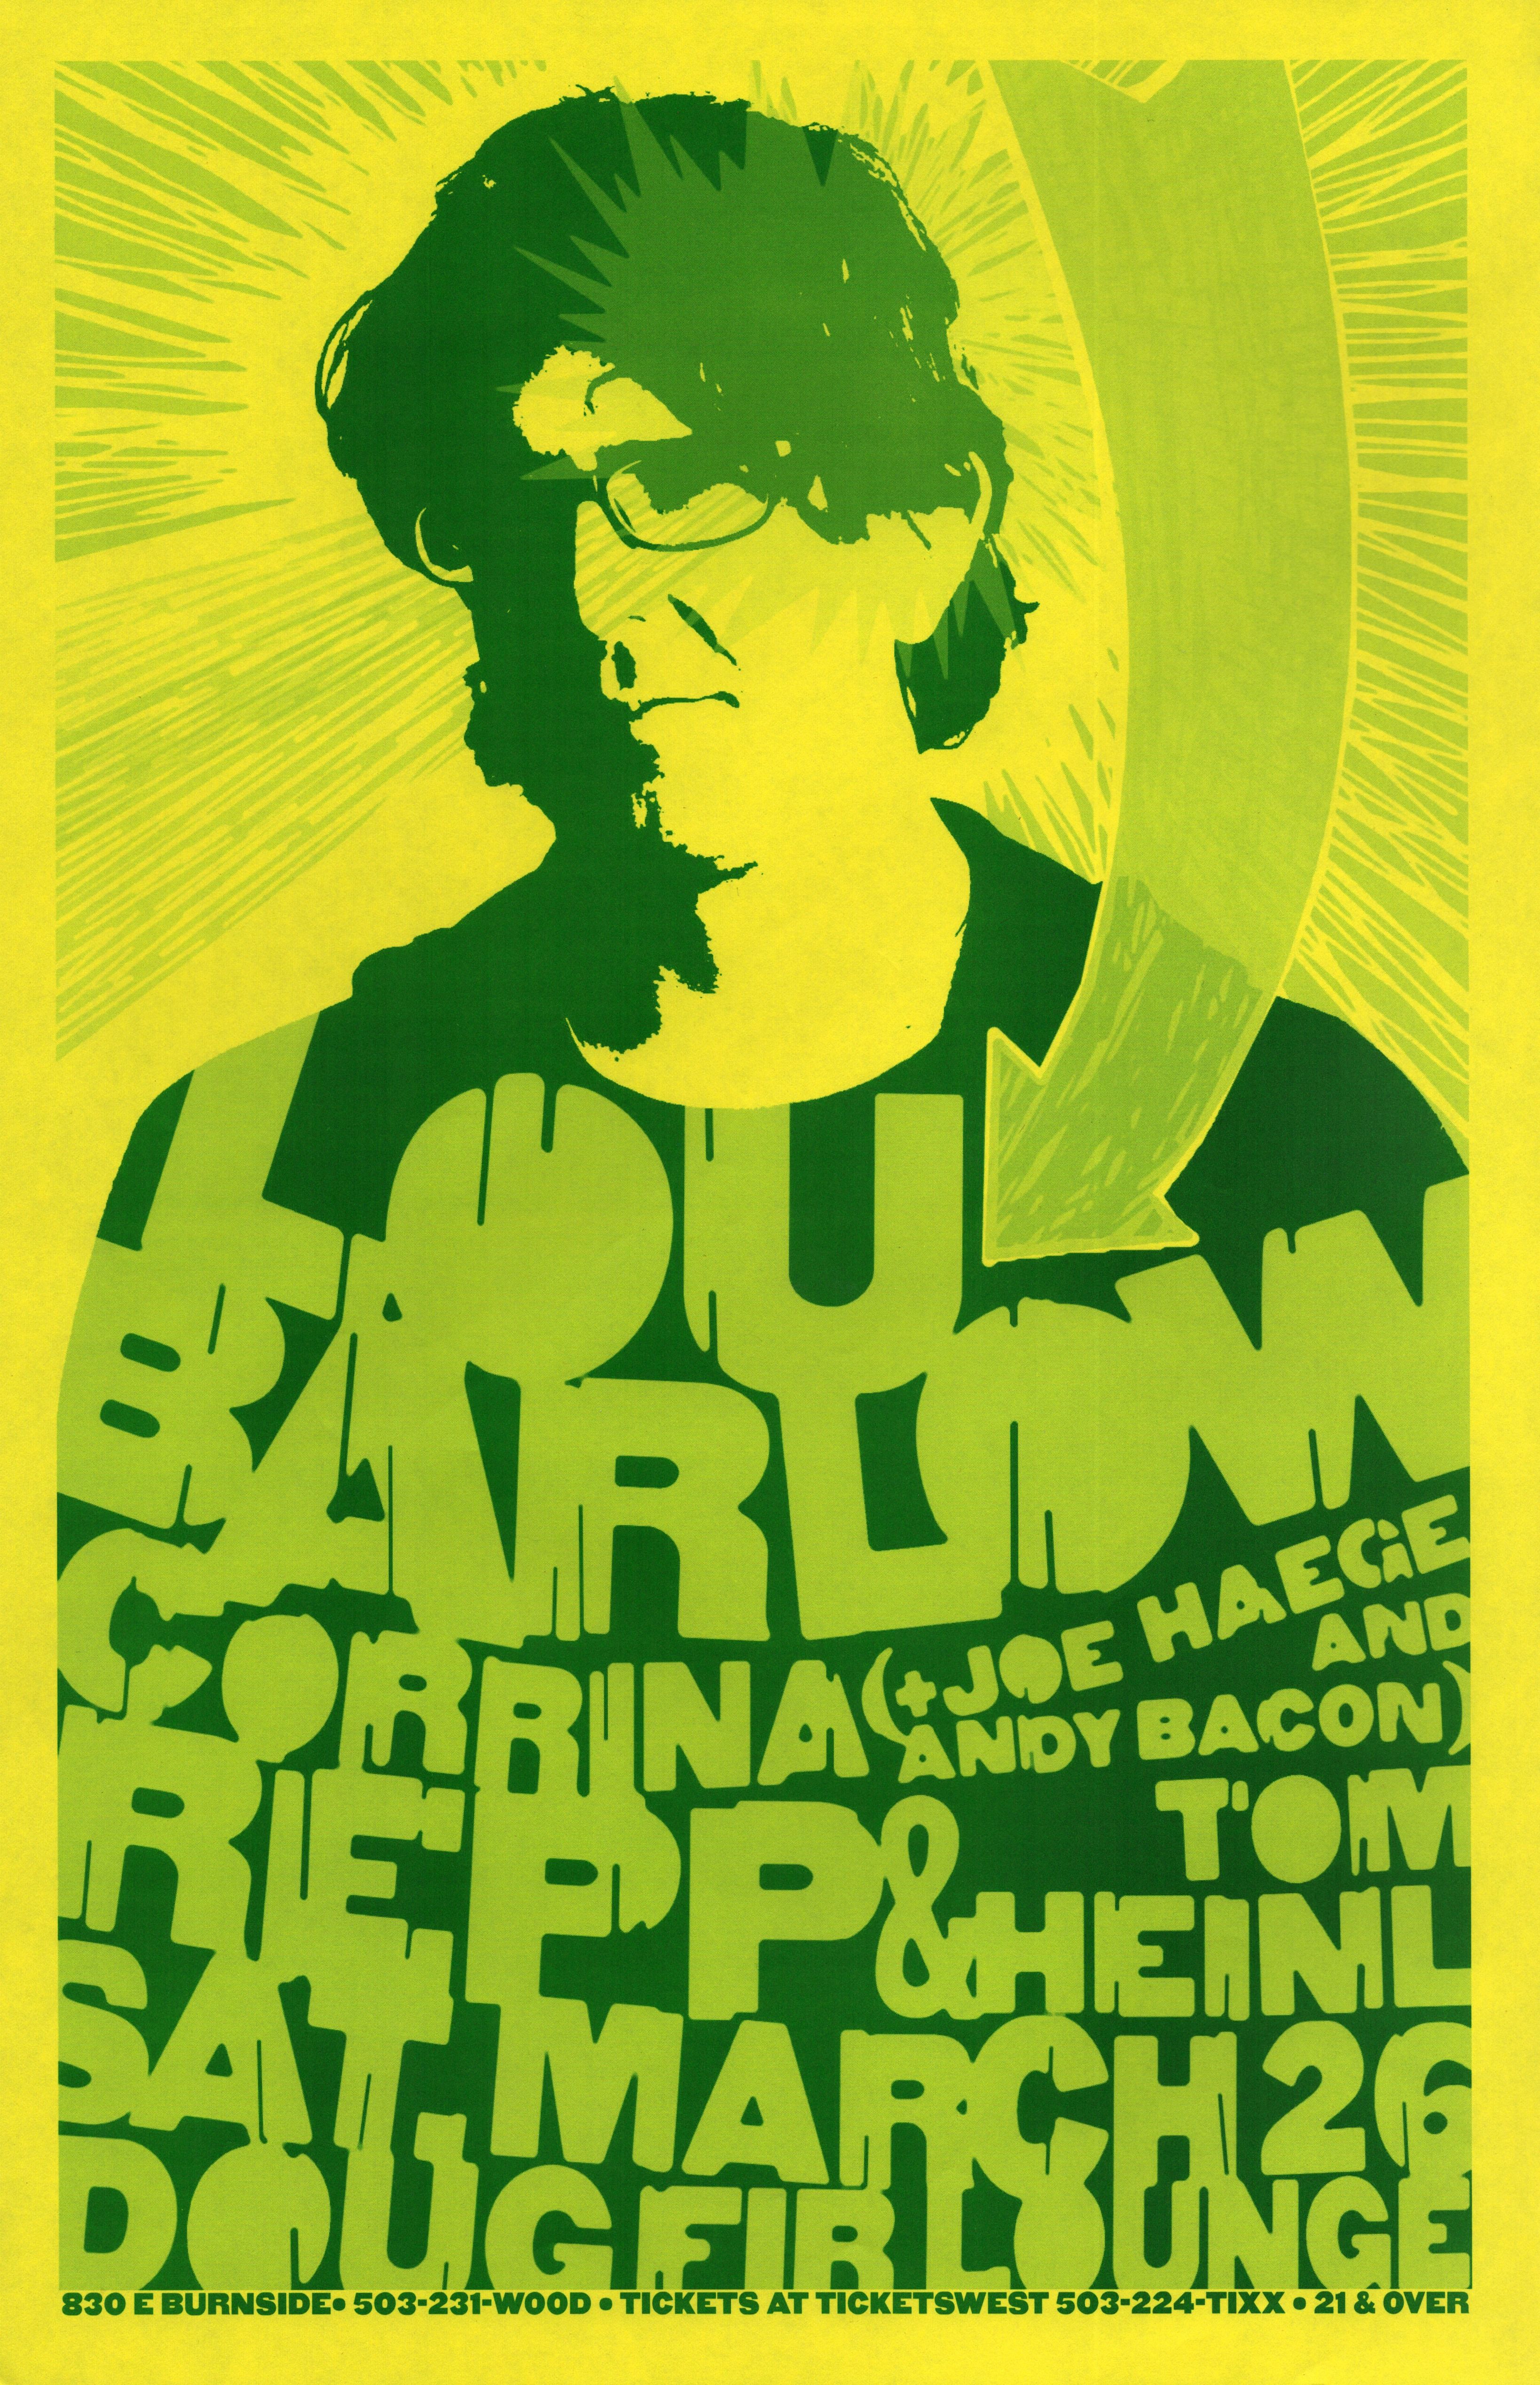 MXP-141.34 Lou Barlow 2005 Doug Fir  Mar 26 Concert Poster